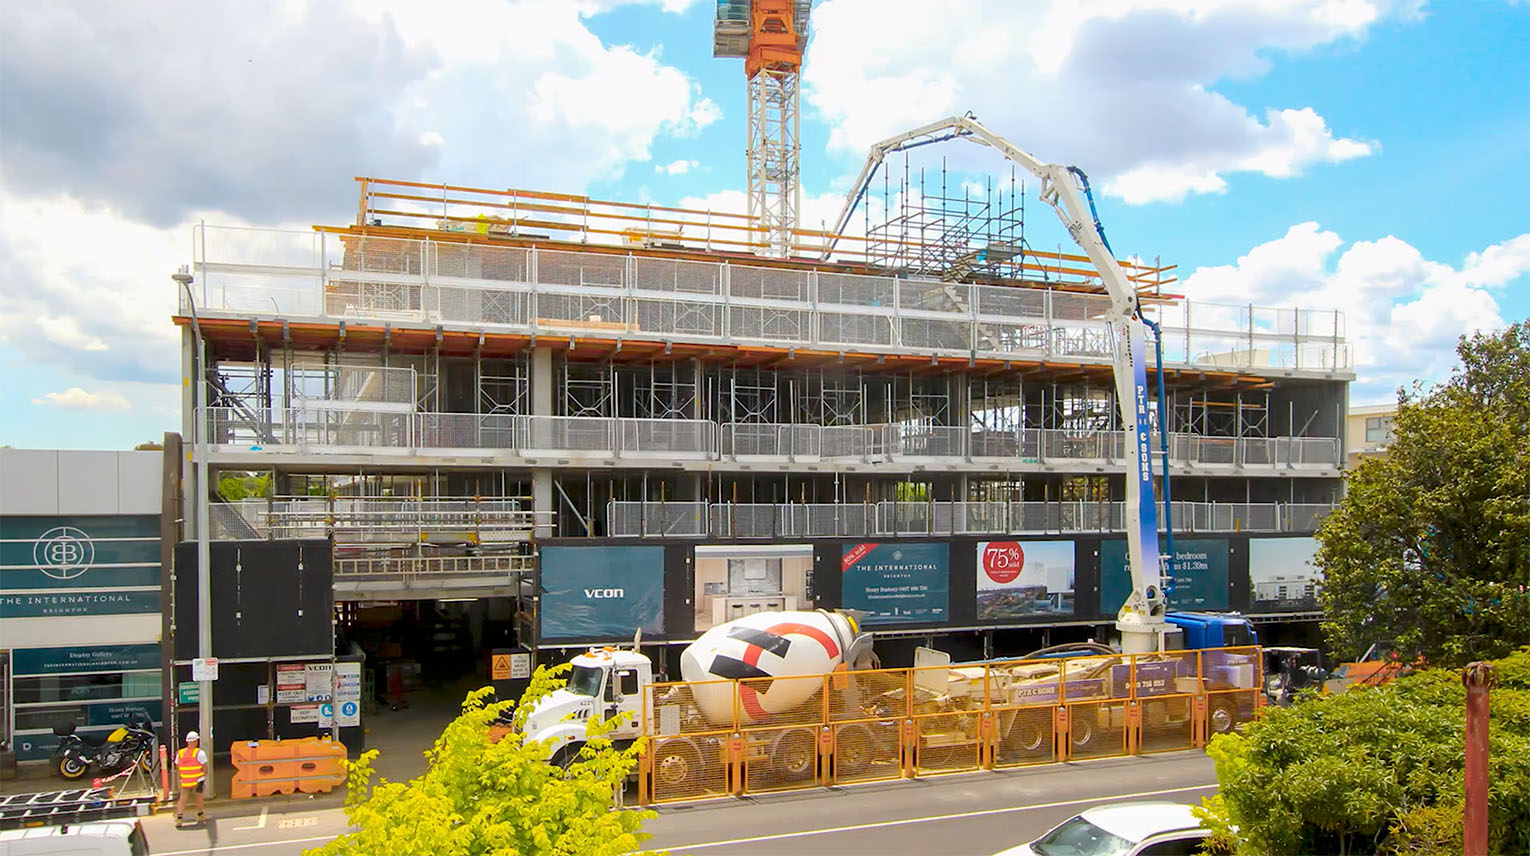 Landream the International, Brighton under Construction progress tracking